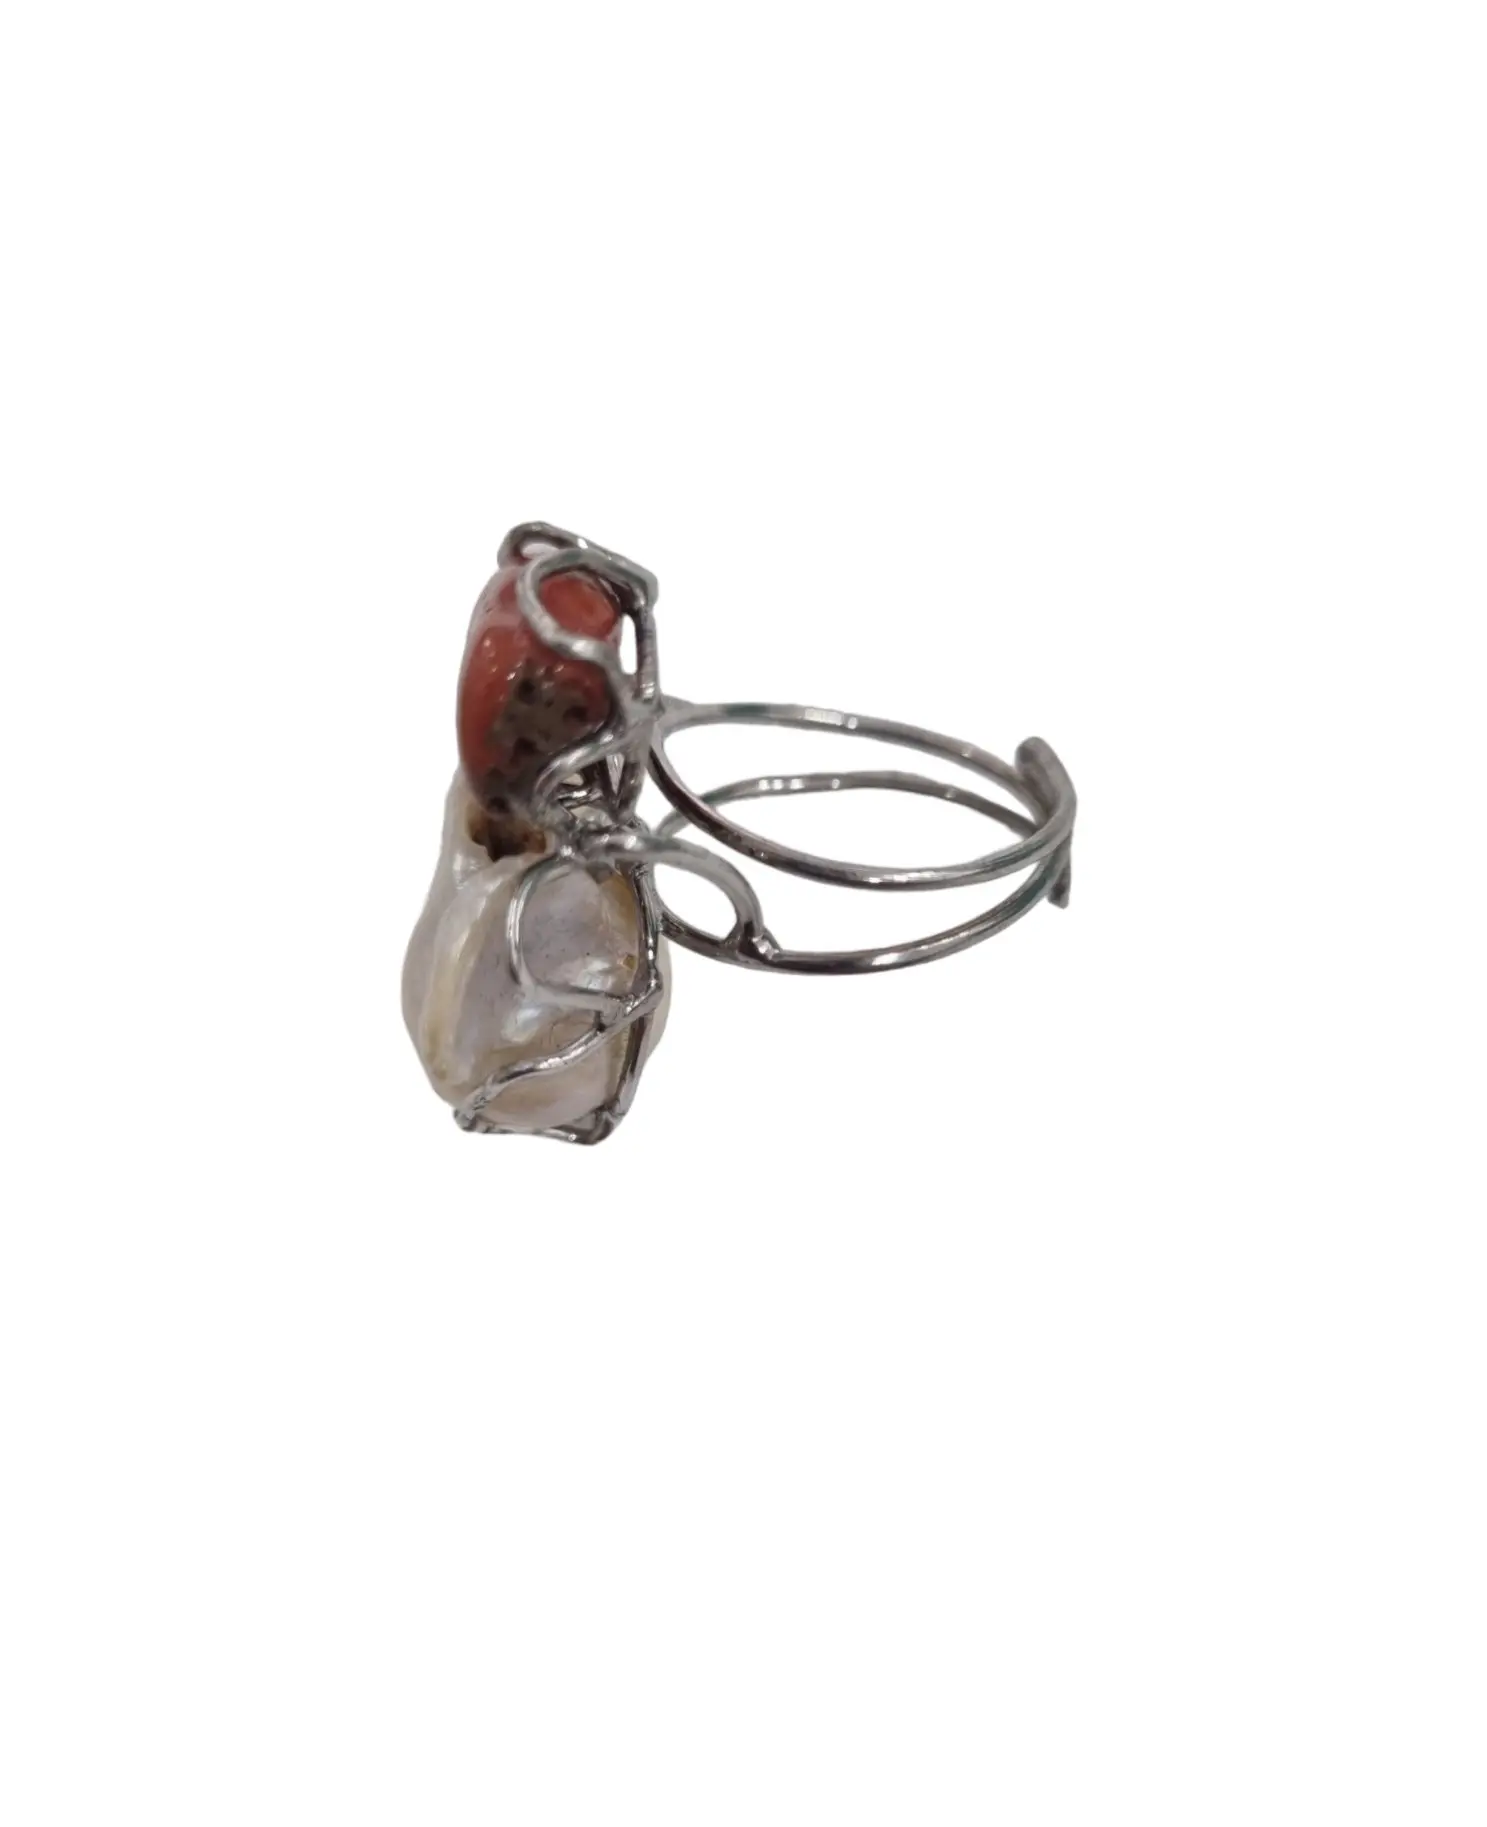 Anello regolabile montato su argento925 con perla scaramazza e corallo.